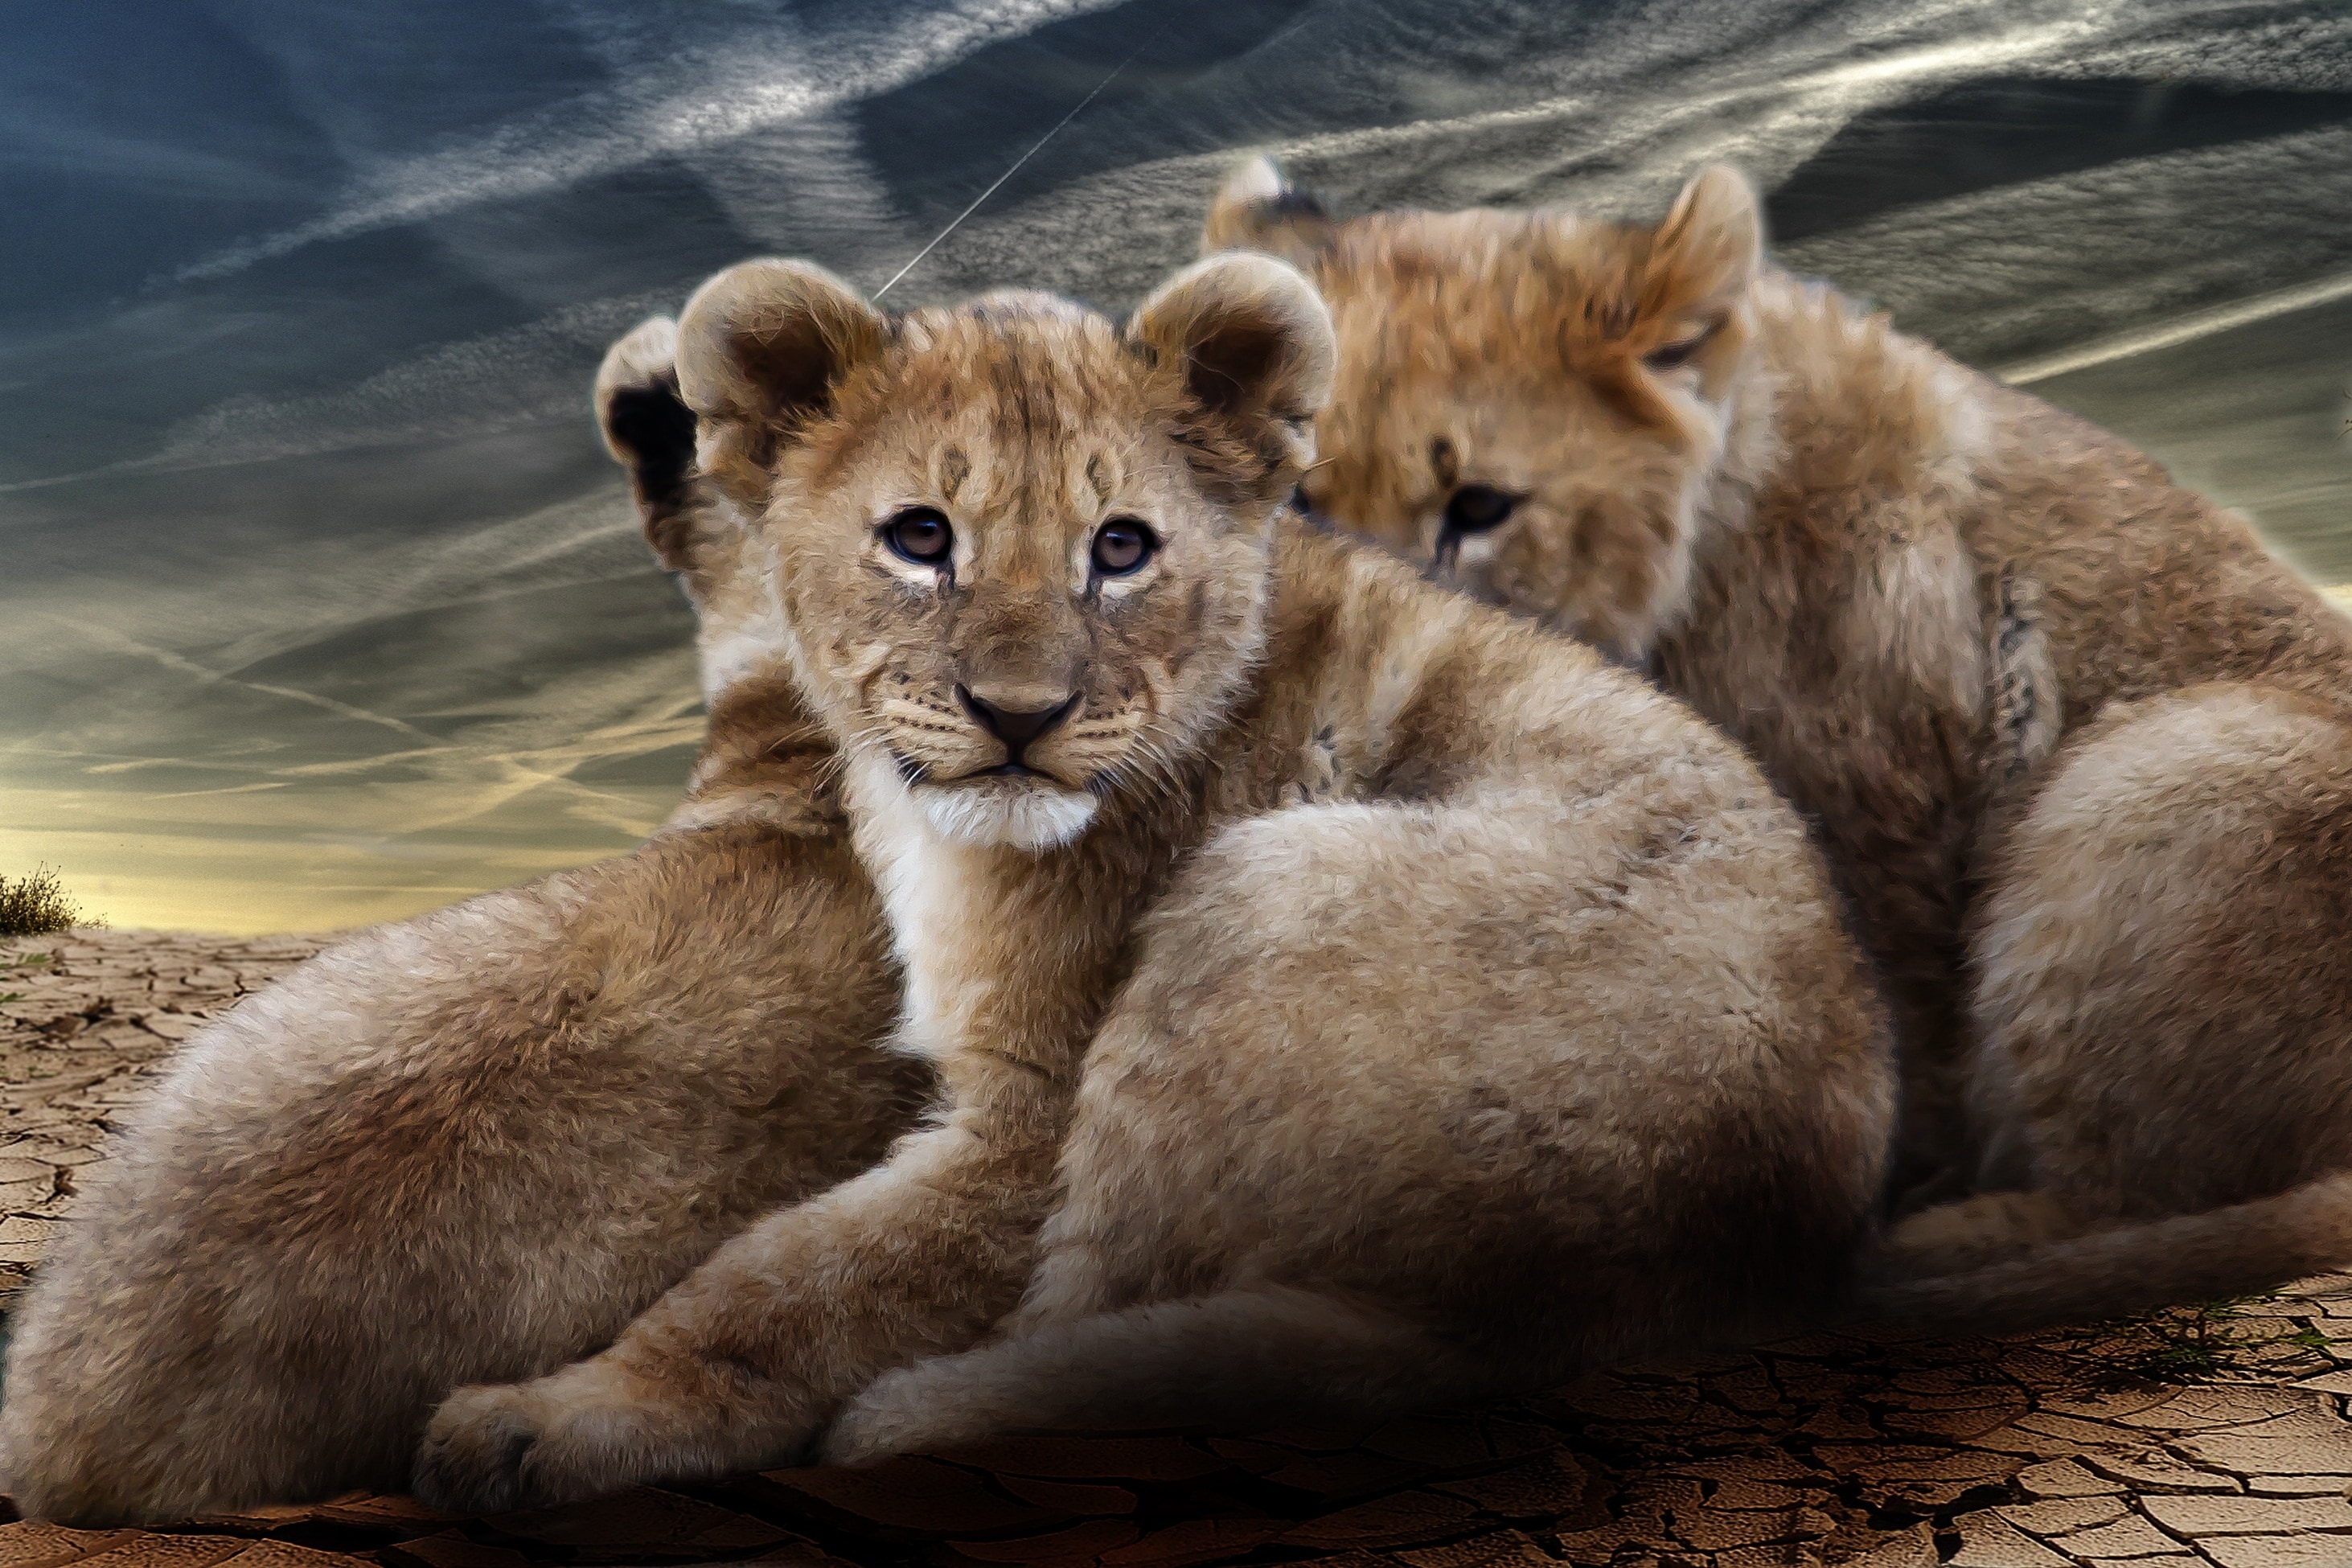 Lion Cub, Lion Babies, Lion, Wildcat, animal wildlife, animals in the wild